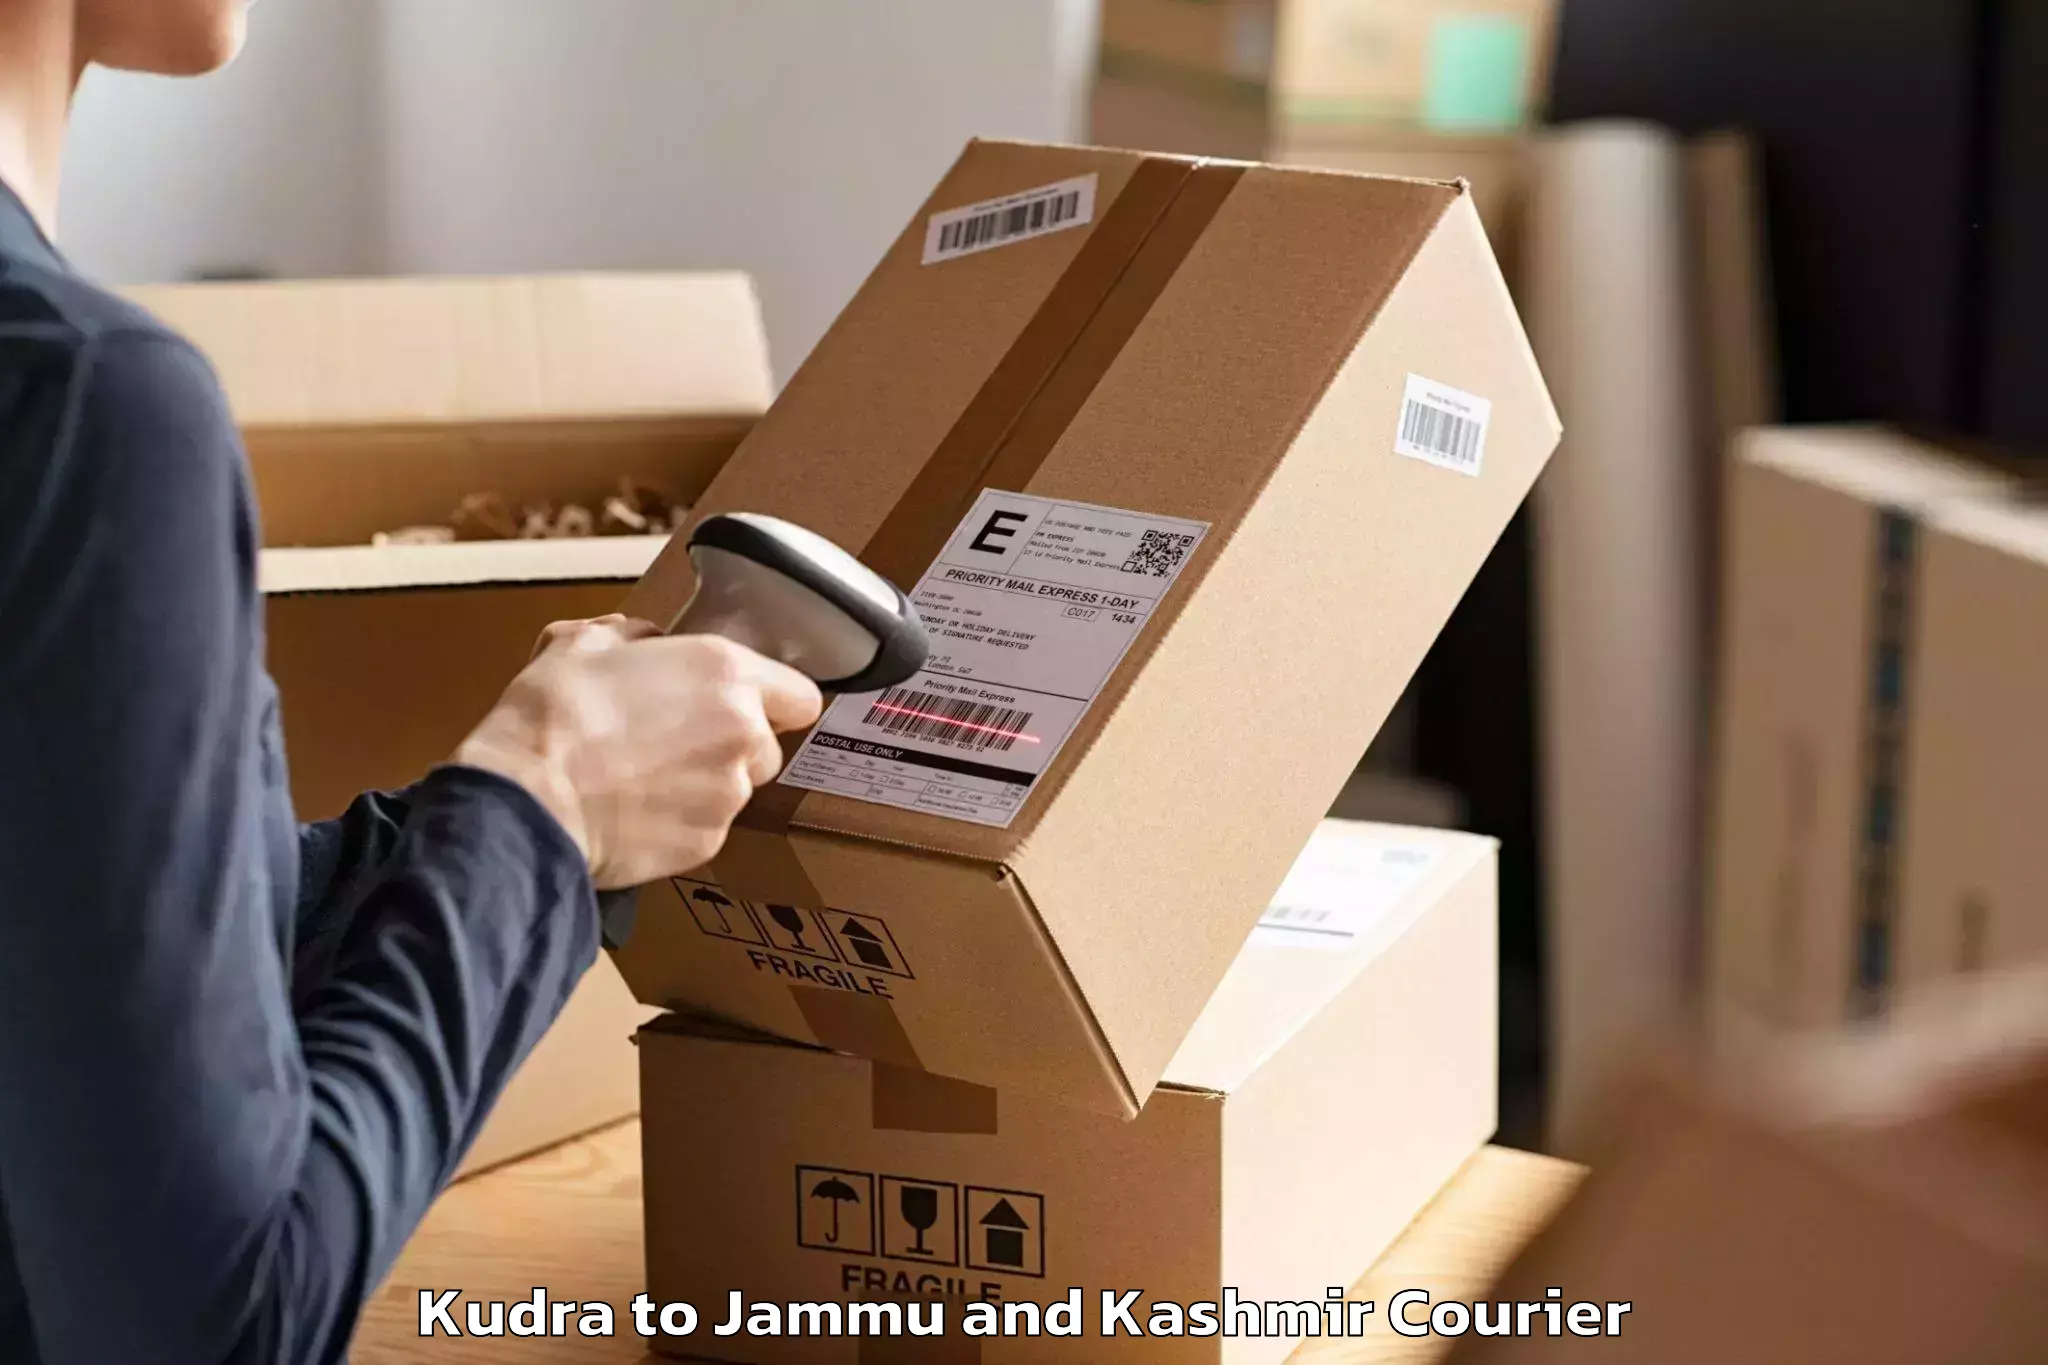 Professional moving company Kudra to Jammu